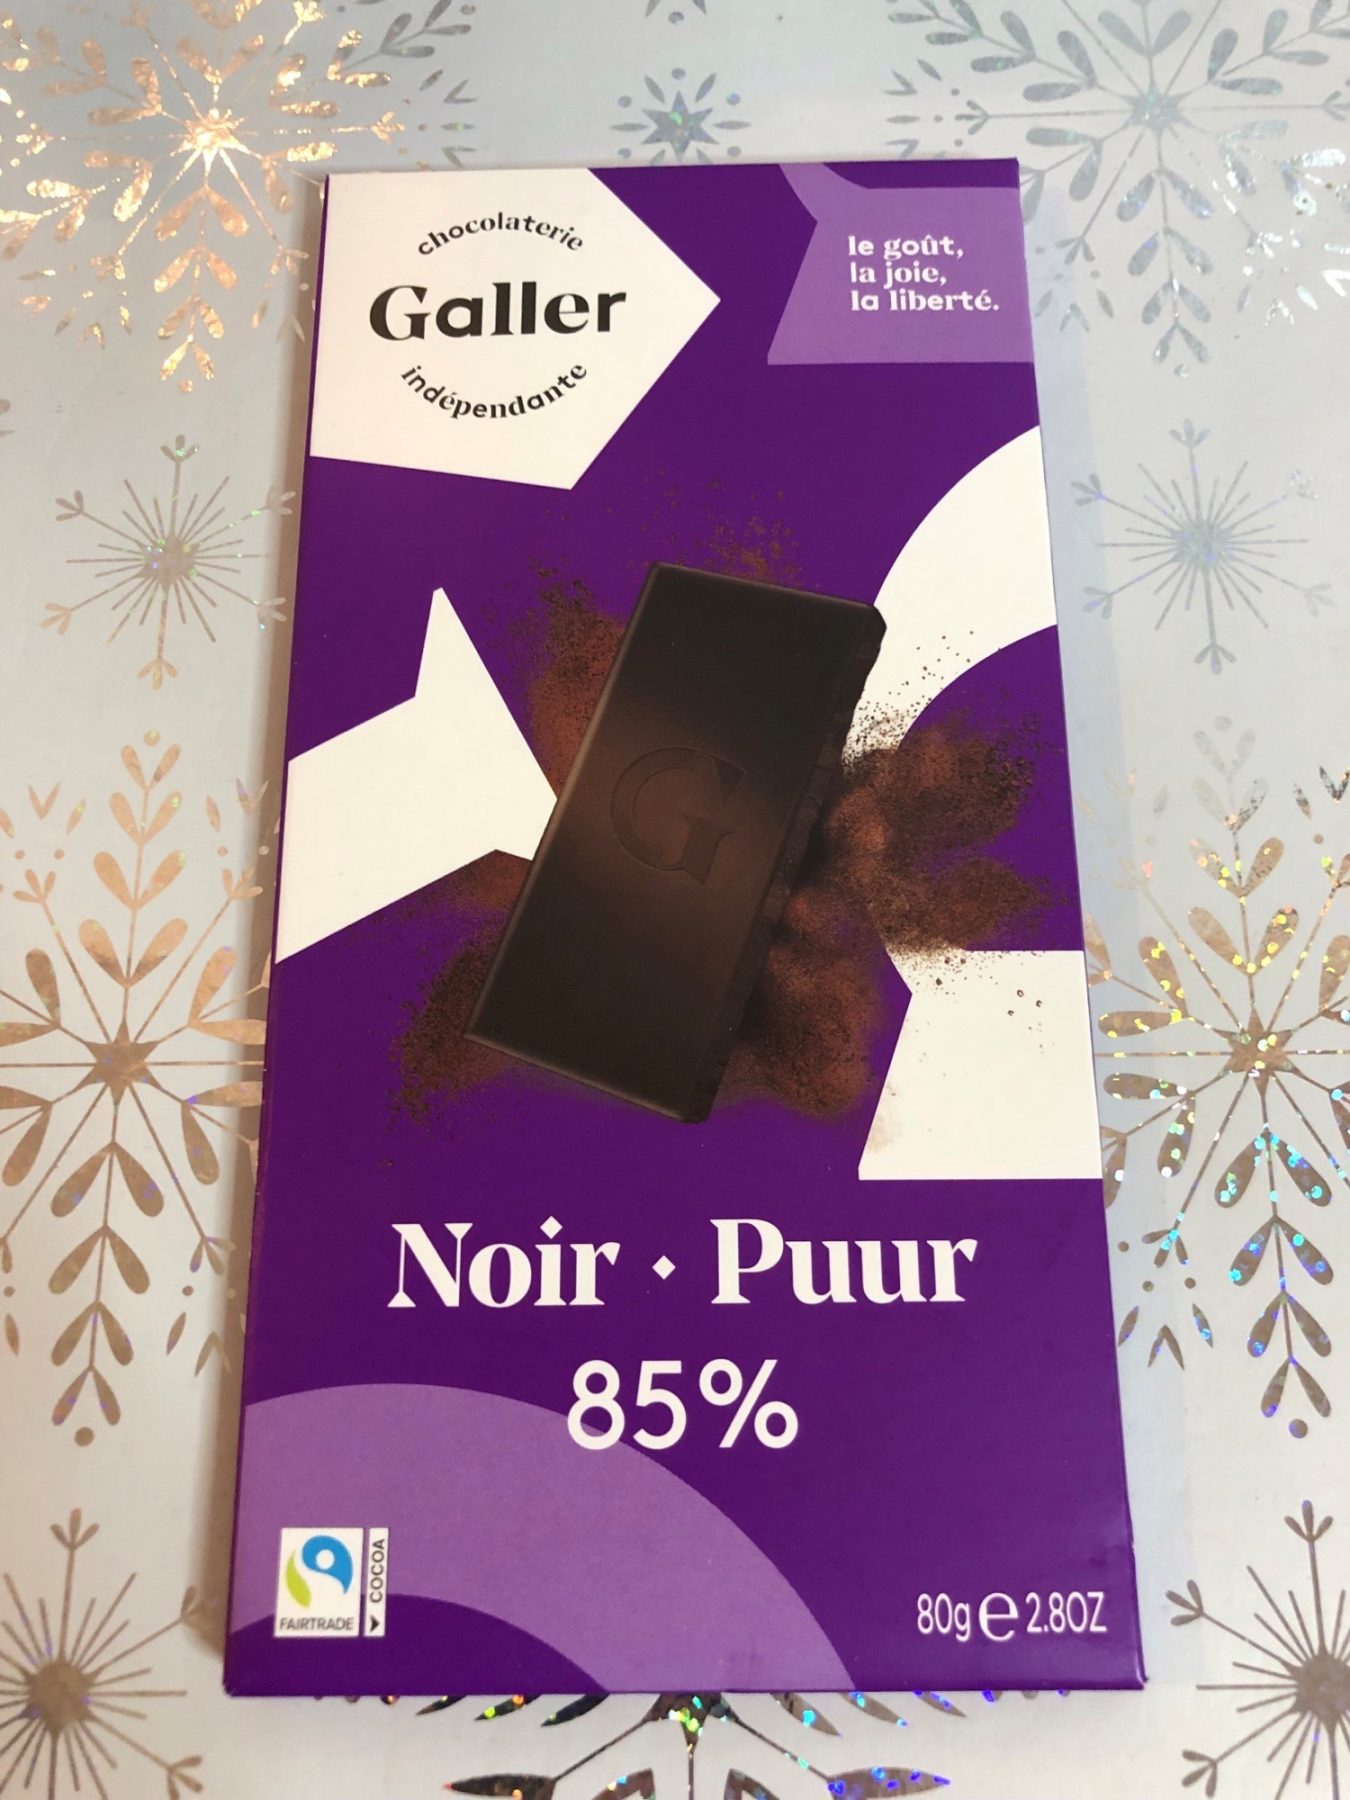 Galler dark chocolate 85%